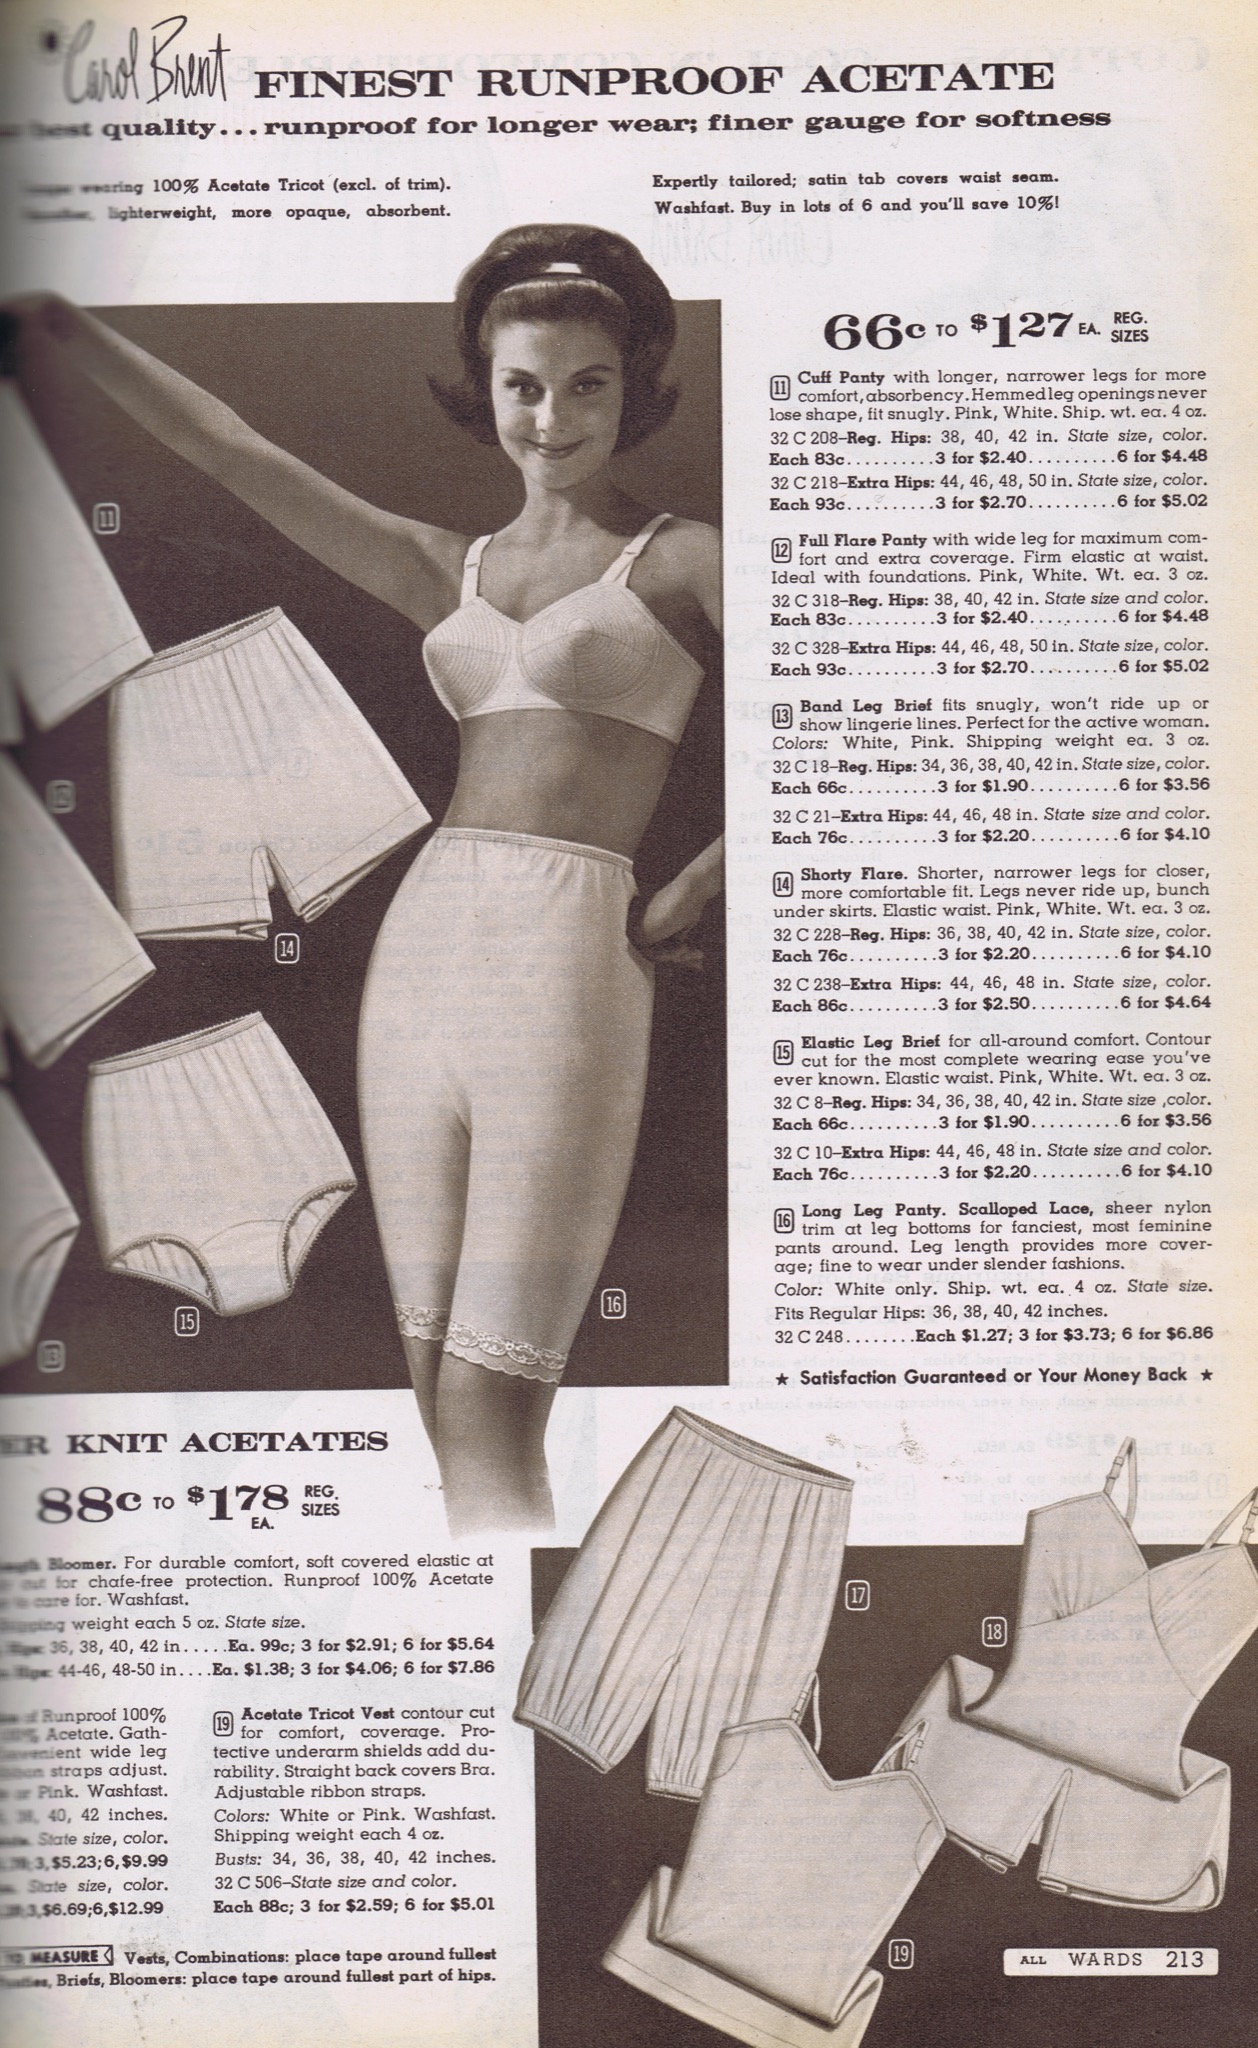 1258px x 2048px - Catalog porn - Underwear ads through the 20th century